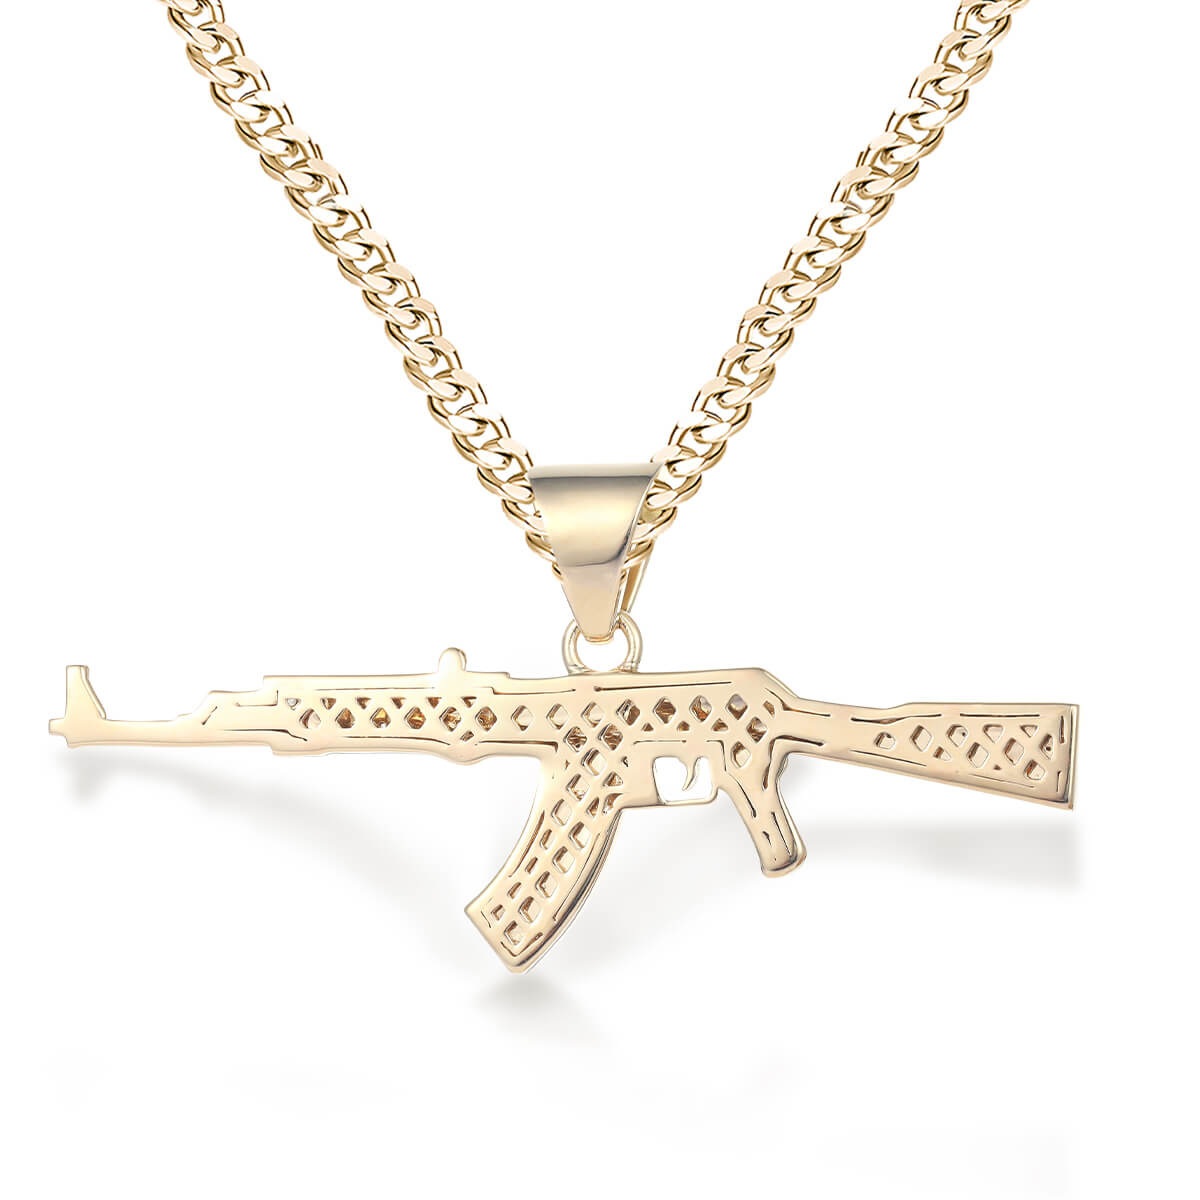 AK 47 Gun Pendant Necklace Personality Hip Hop Rock Silver Street Men&